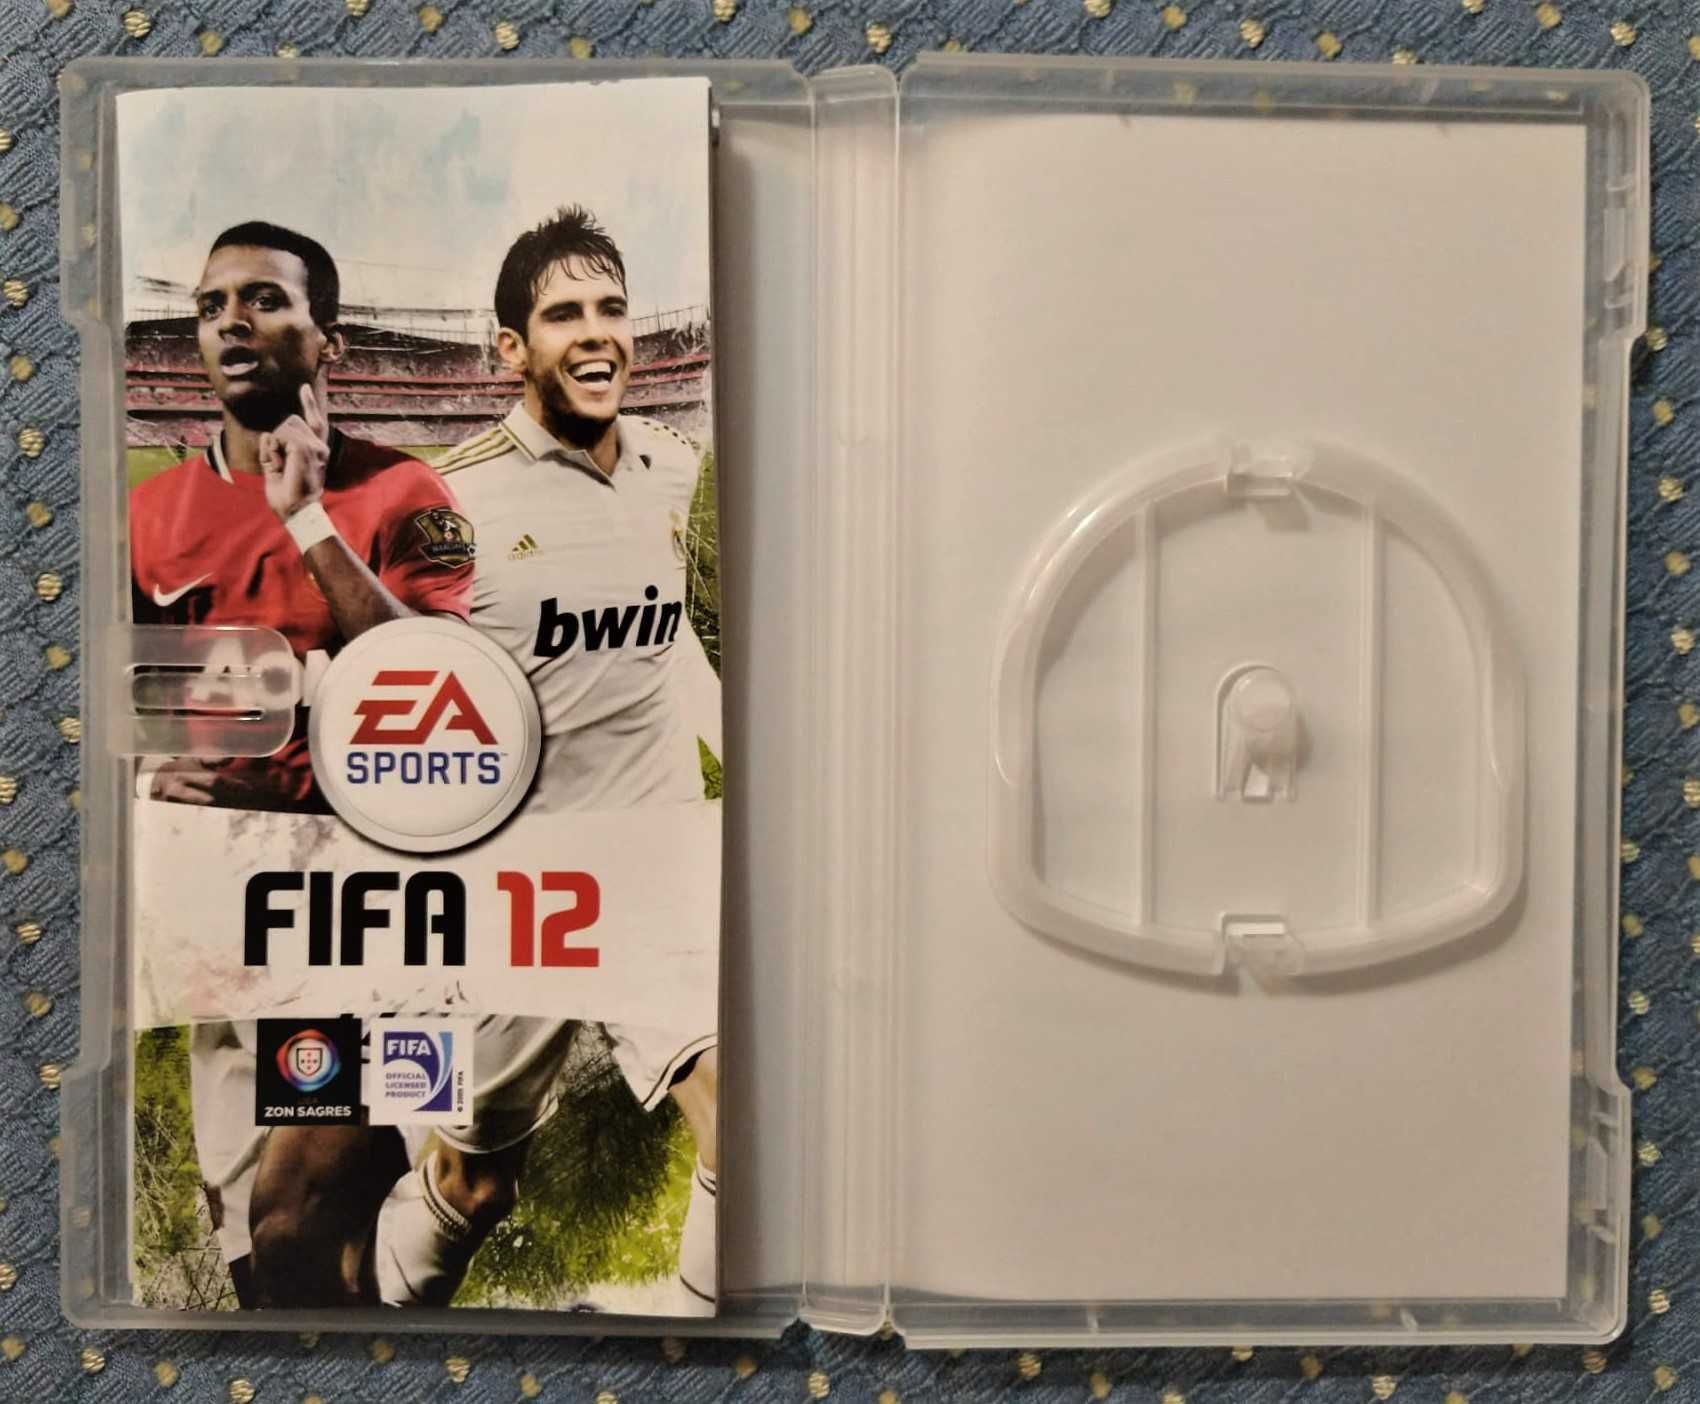 Caixa e Manual do Videojogo FIFA 12 da PSP (sem o jogo) - Ótimo Estado